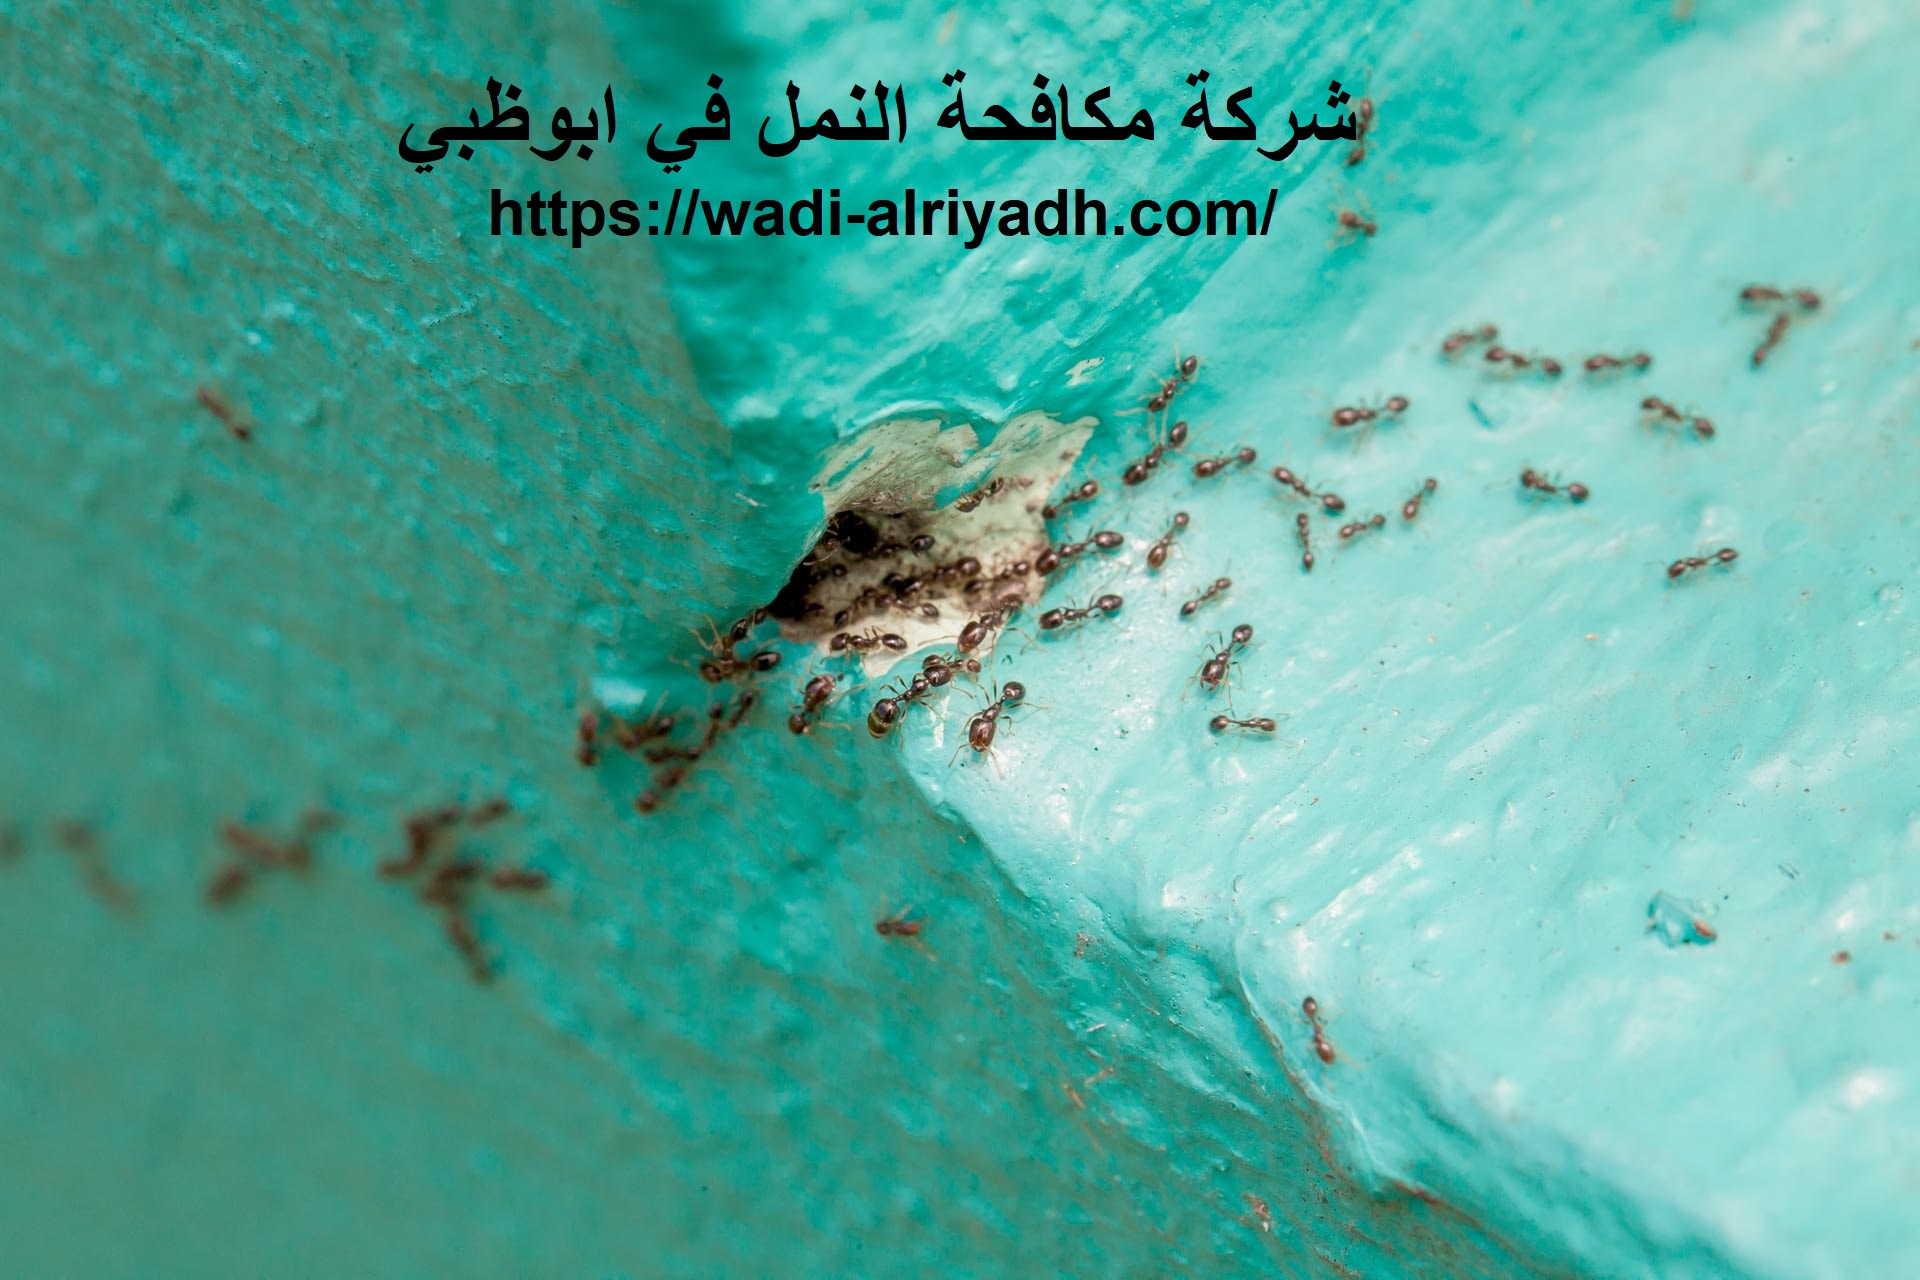 شركة مكافحة النمل في ابوظبي |0555403225